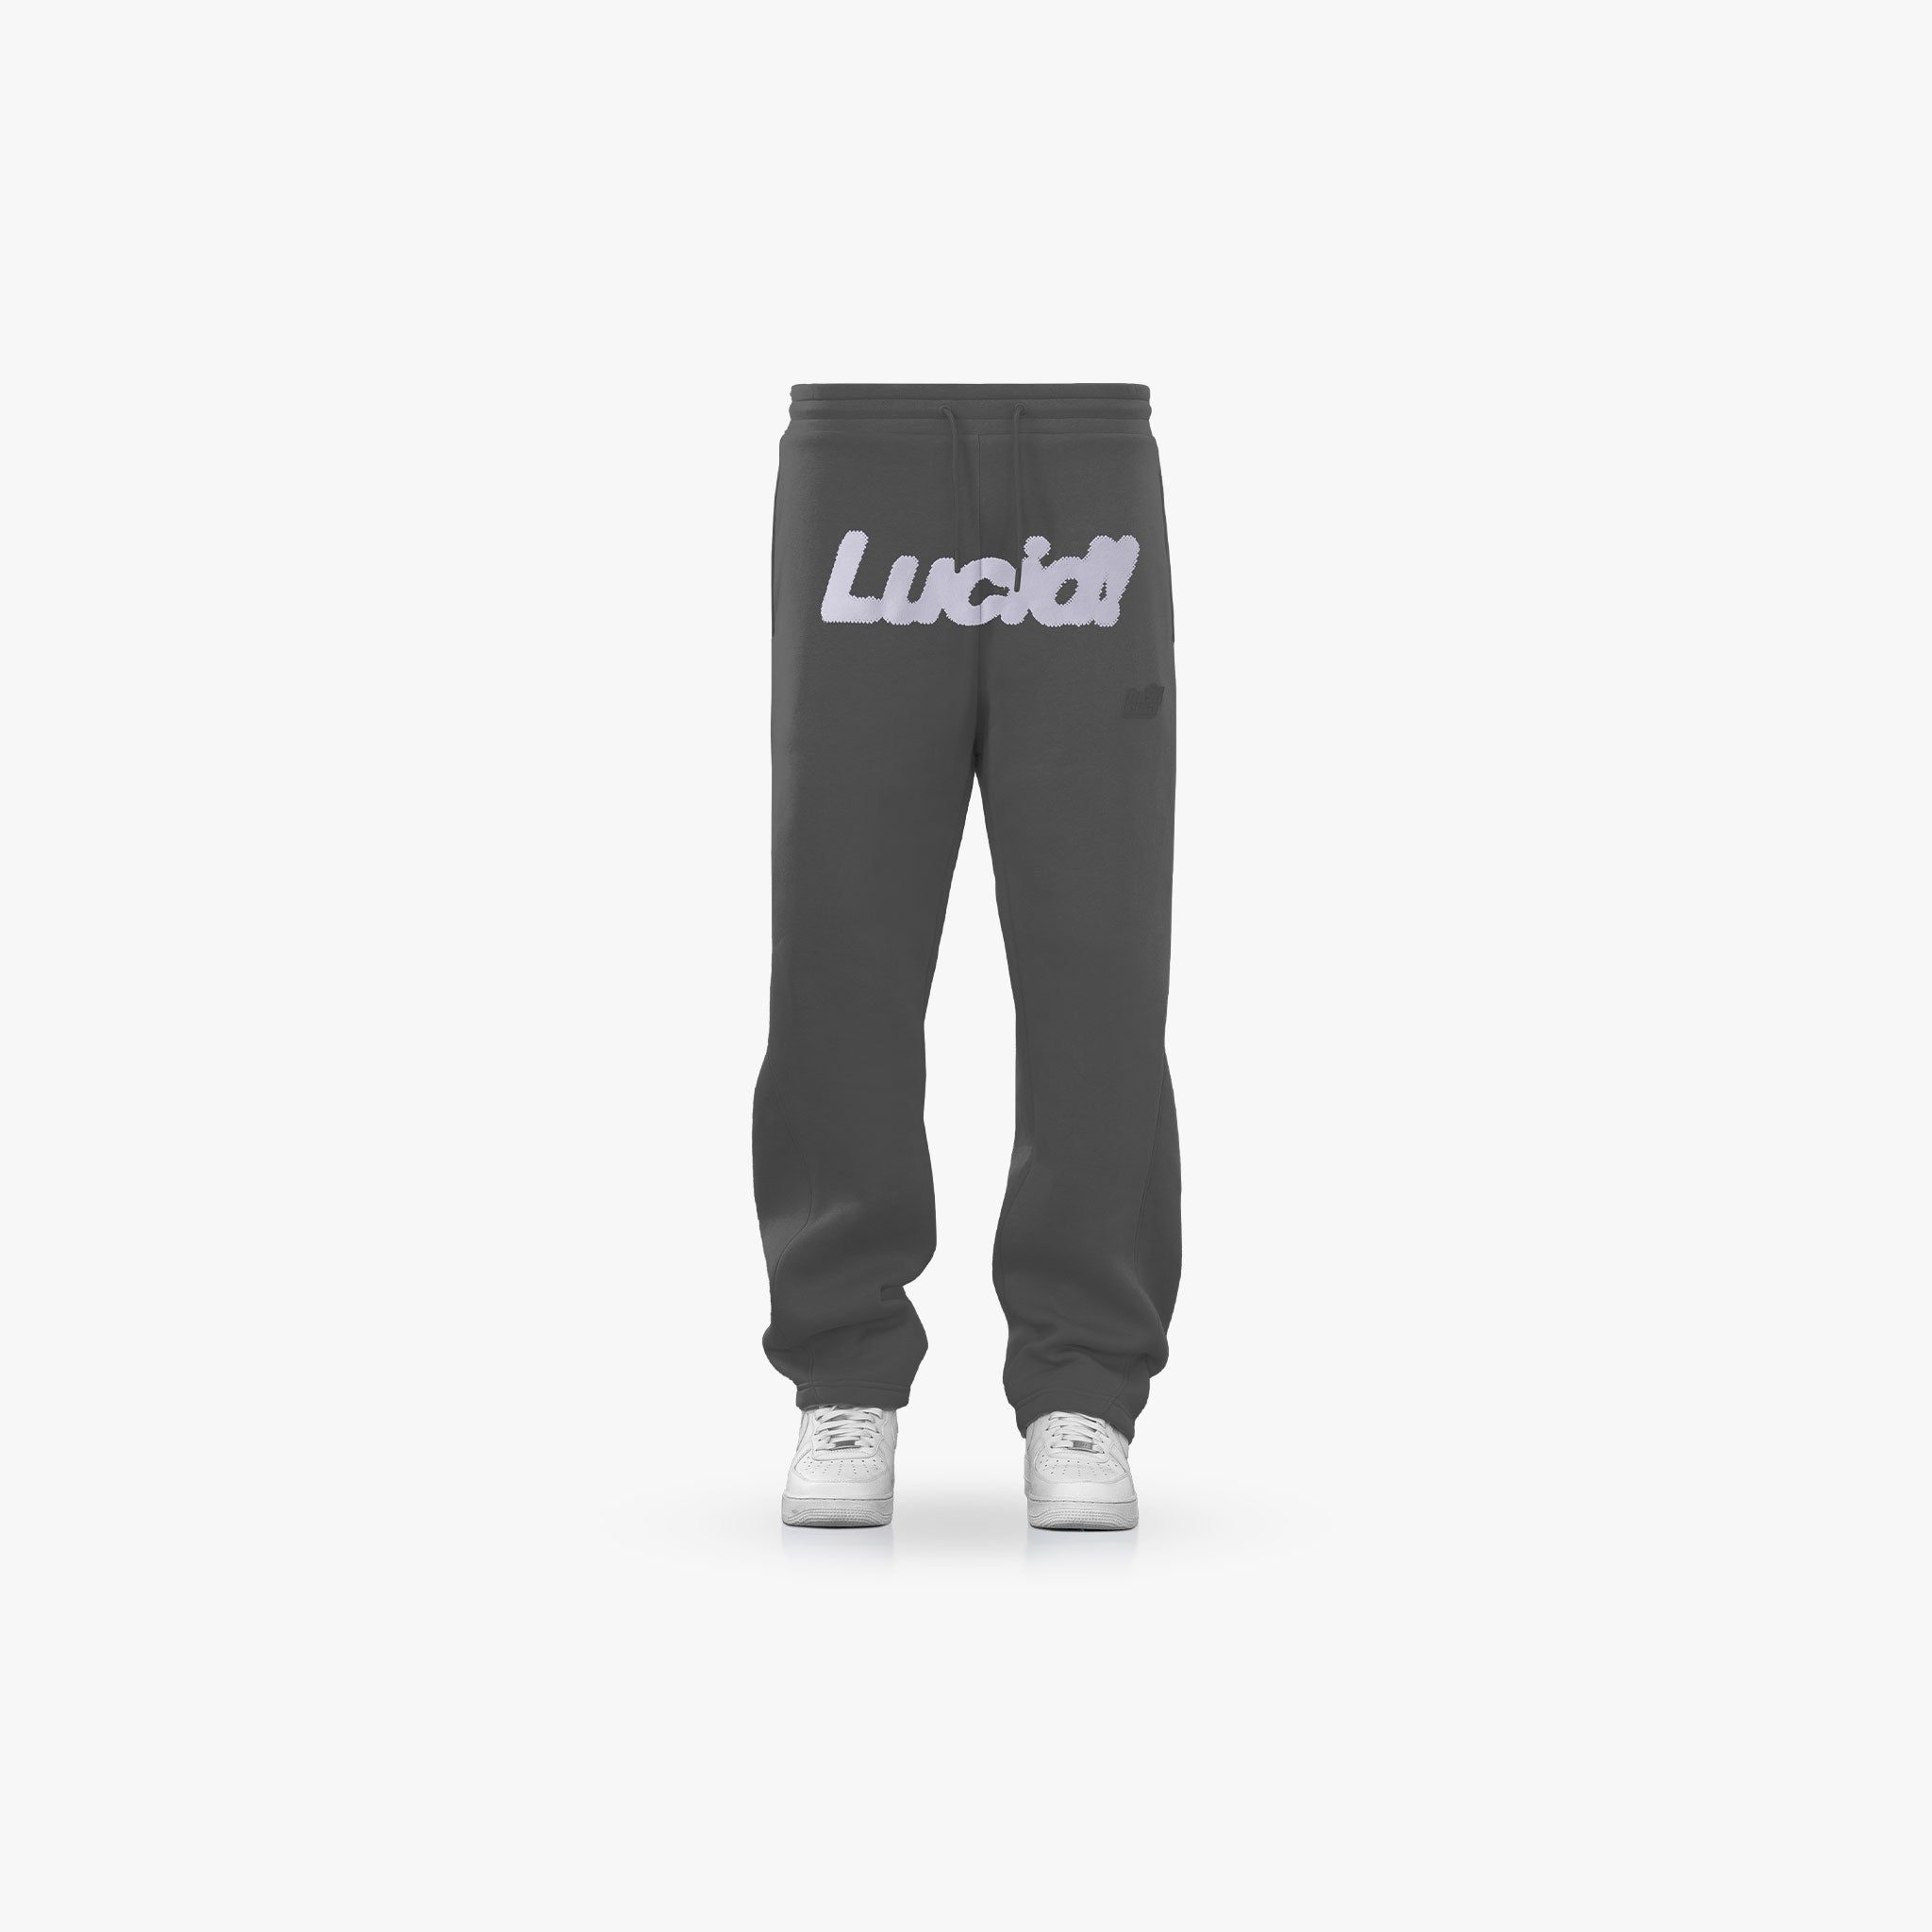 Lucid! Sweatpants Grey/Grey - Lucid Club